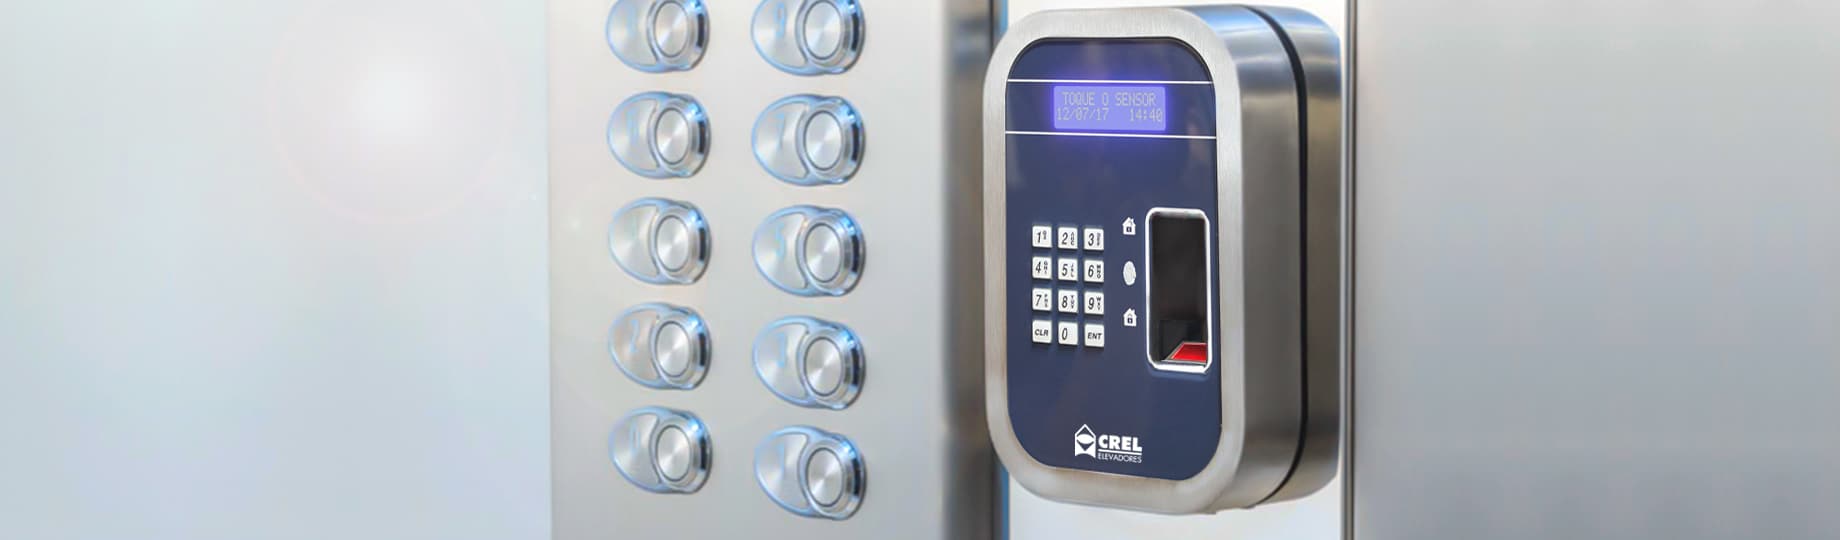 Modernização de elevadores: controle por biometria